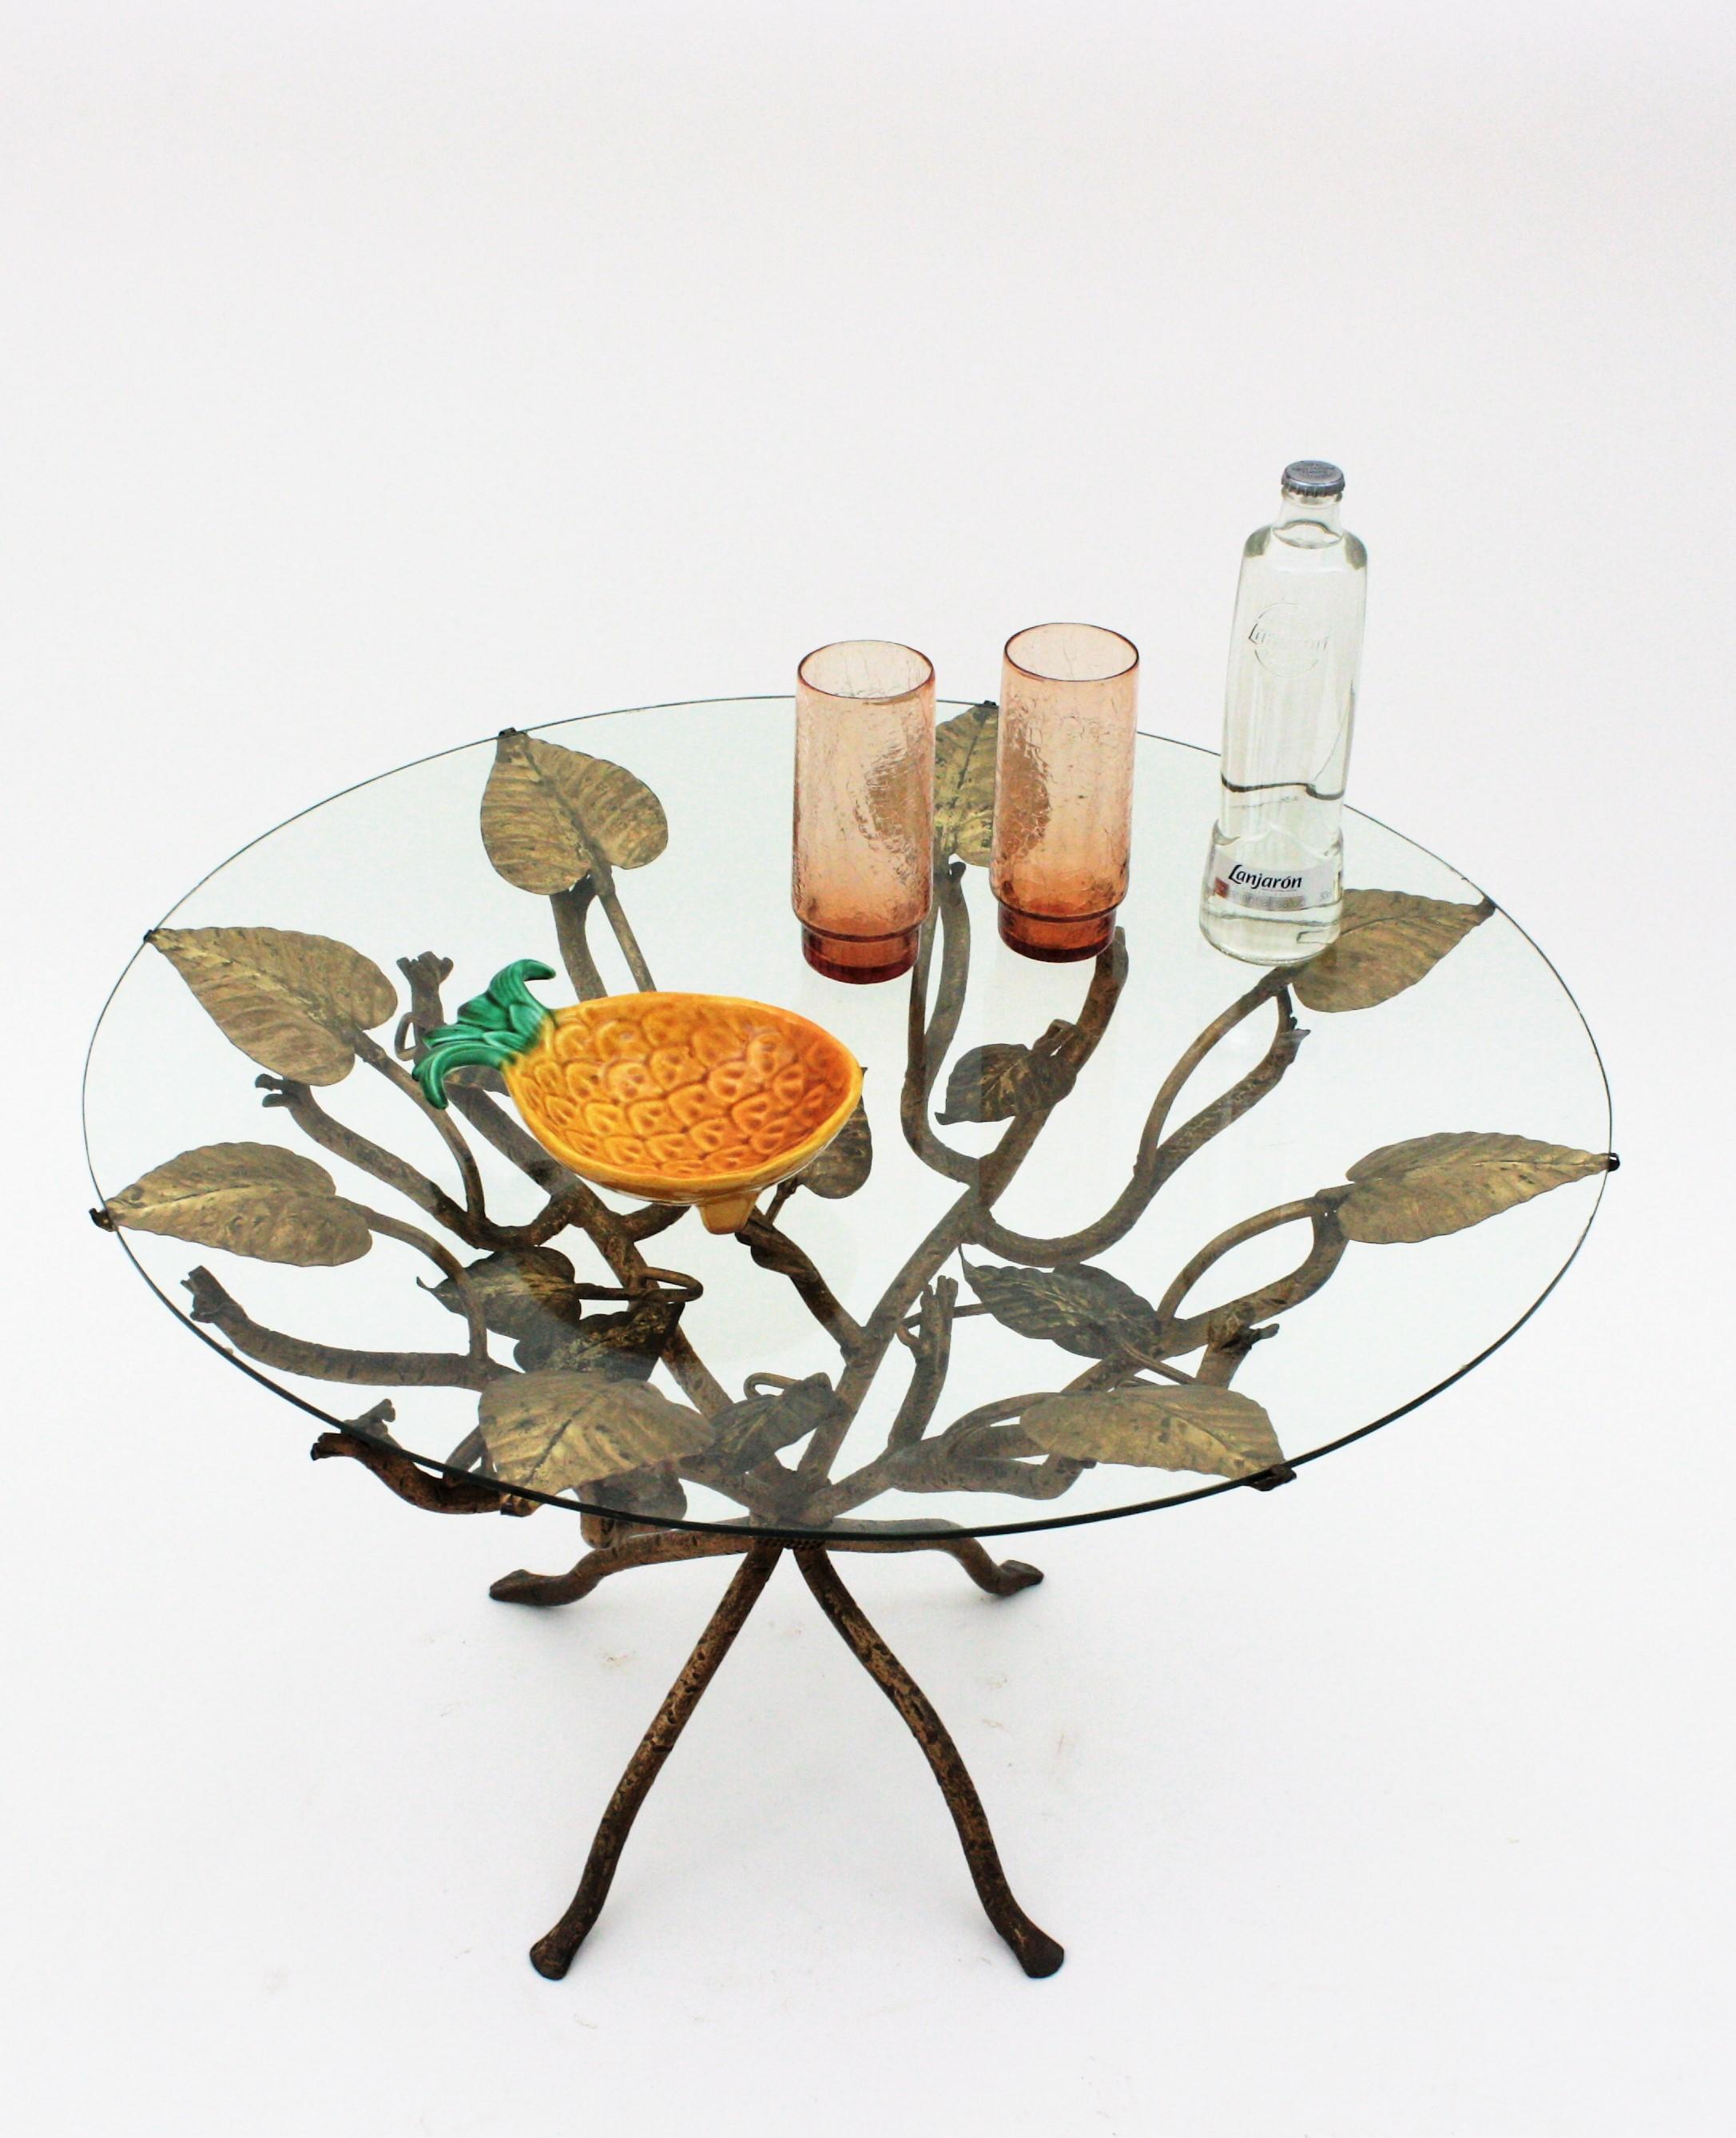 Couchtisch / Niedriger Tisch / Beistelltisch mit Foliage-Design,  Schmiedeeisen, Blattgold, Frankreich, 1950er Jahre.
Einzigartiger Hollywood Regency Couchtisch oder Beistelltisch mit naturalistischem Design. Dieser Tisch zeigt eine Verflechtung von